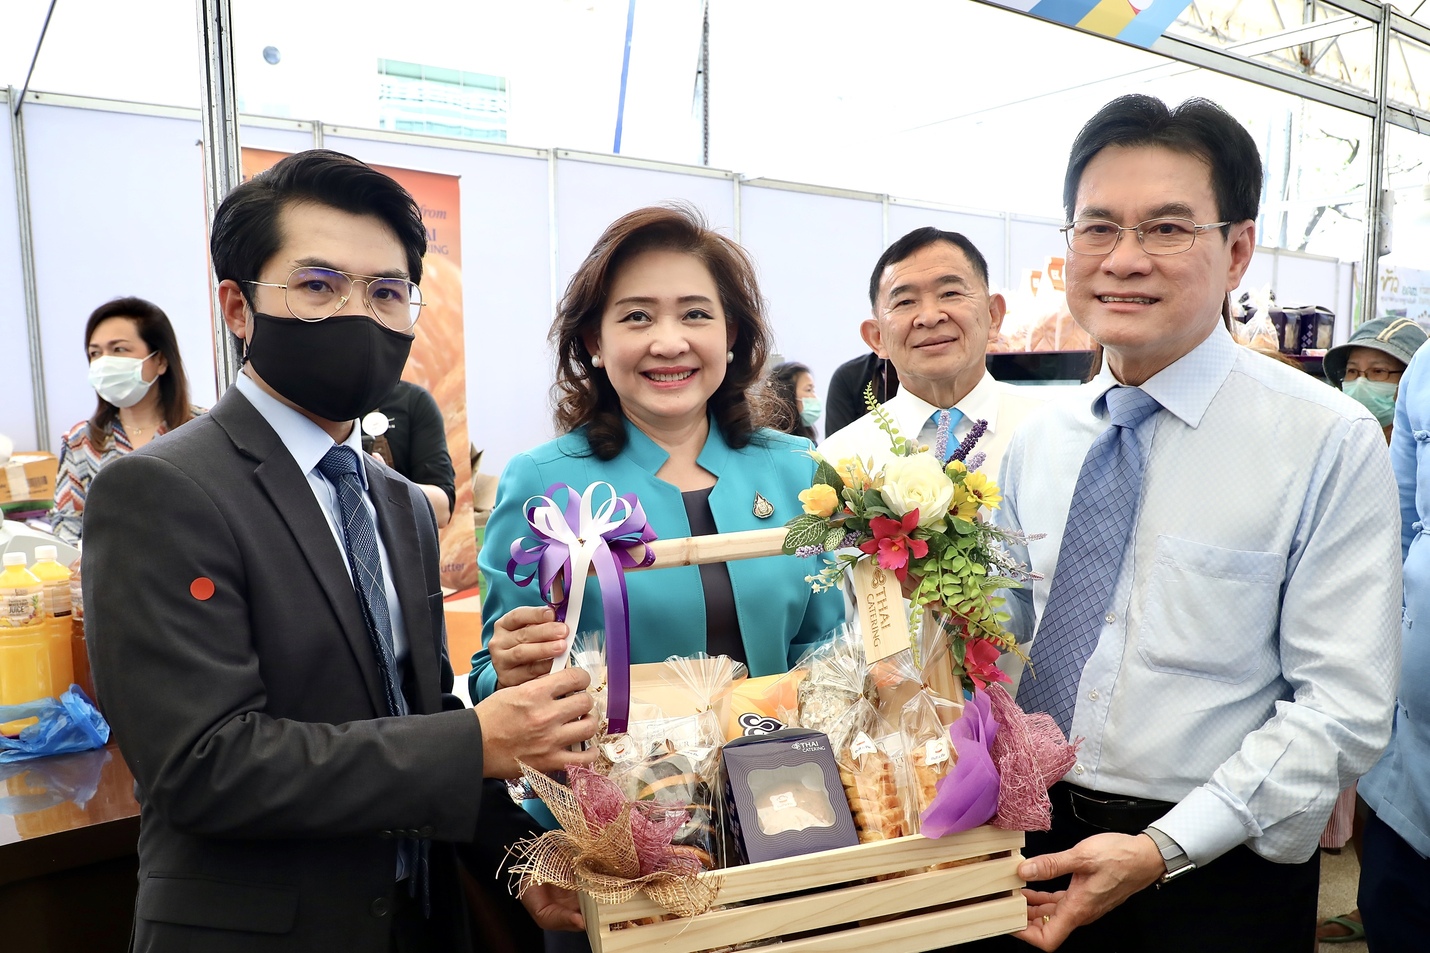 การบินไทยร่วมกับกระทรวงพาณิชย์สนับสนุนเกษตรกรไทยผ่านผลิตภัณฑ์จากครัวการบิน